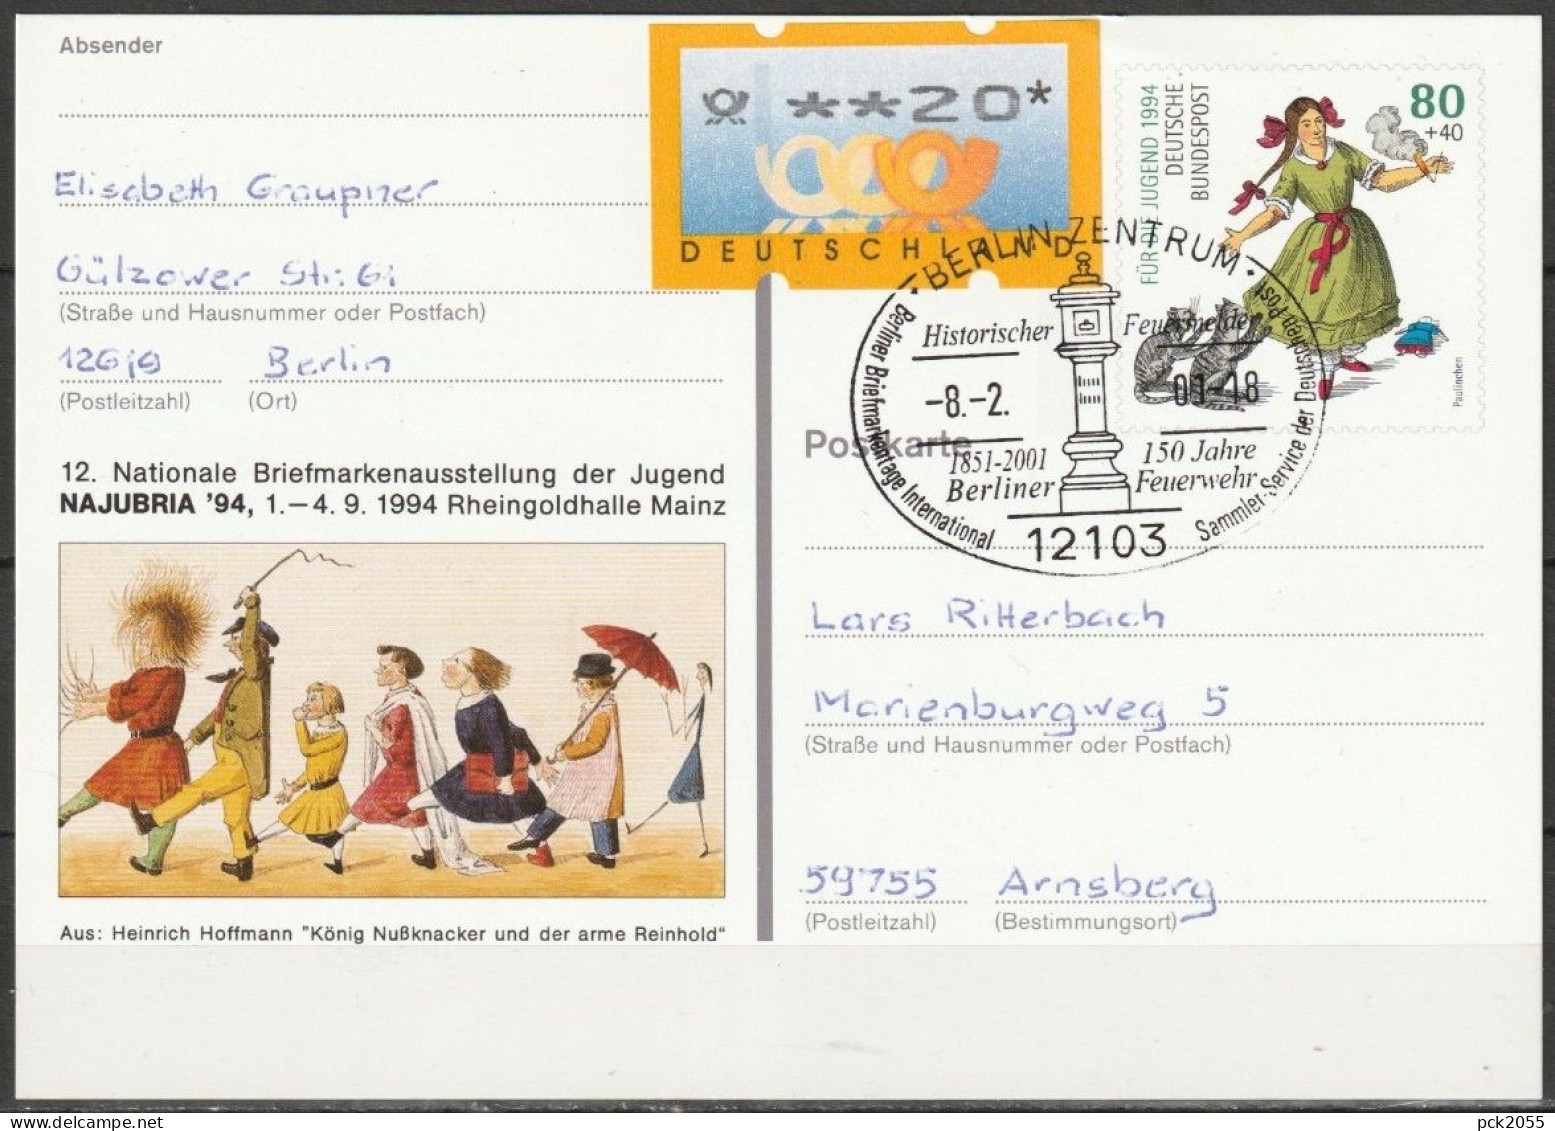 BRD Ganzsache 1994 PSo 34 NAJUBRIA 94 Mainz SST. Berlin Historischer Feuermelder 8.2.2001 (d 3547)günstige Versandkosten - Cartoline - Usati